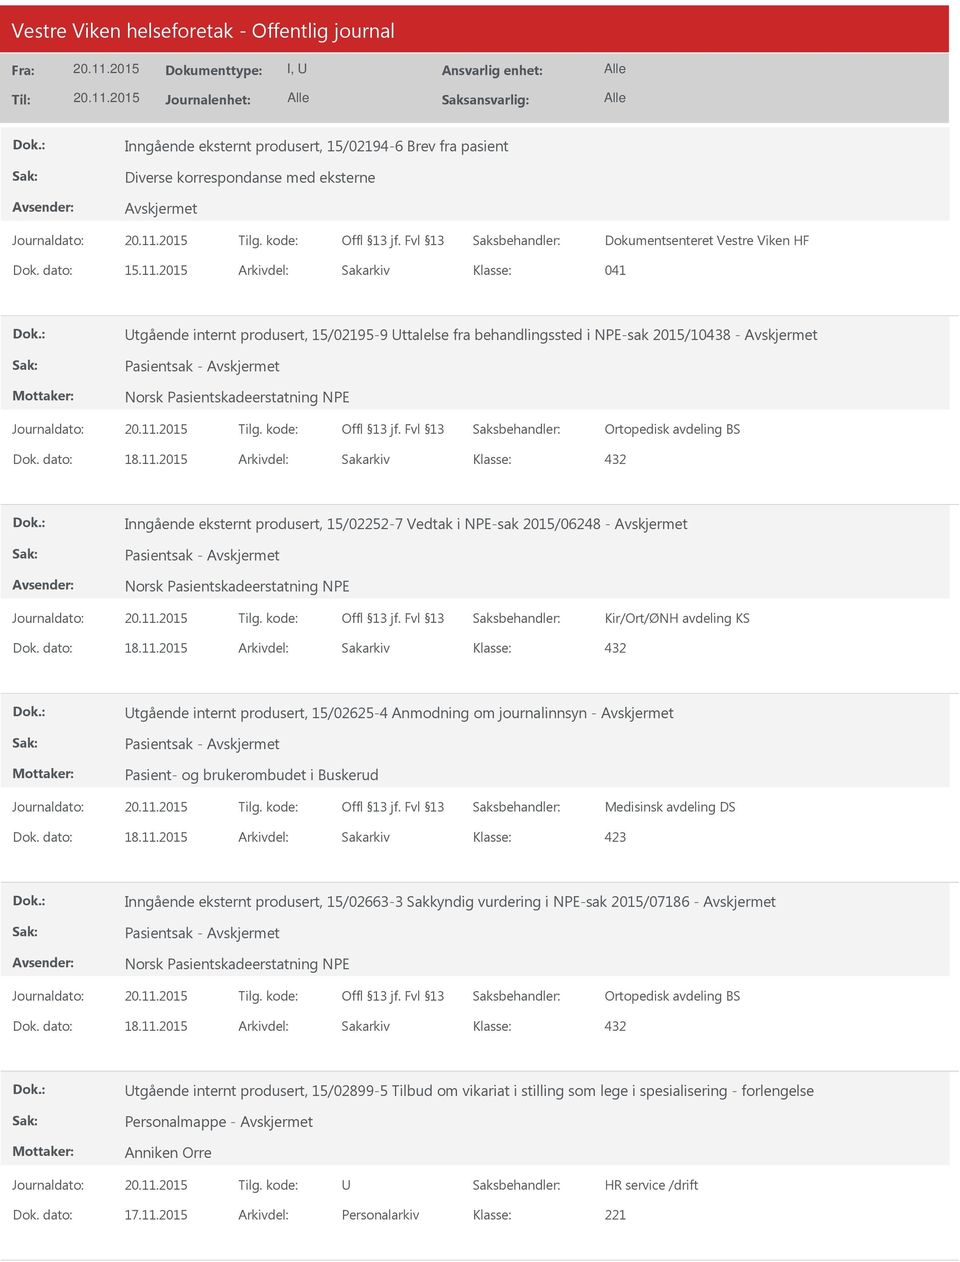 Vedtak i NPE-sak 2015/06248 - Pasientsak - Kir/Ort/ØNH avdeling KS tgående internt produsert, 15/02625-4 Anmodning om journalinnsyn - Pasientsak - Pasient- og brukerombudet i Buskerud Medisinsk